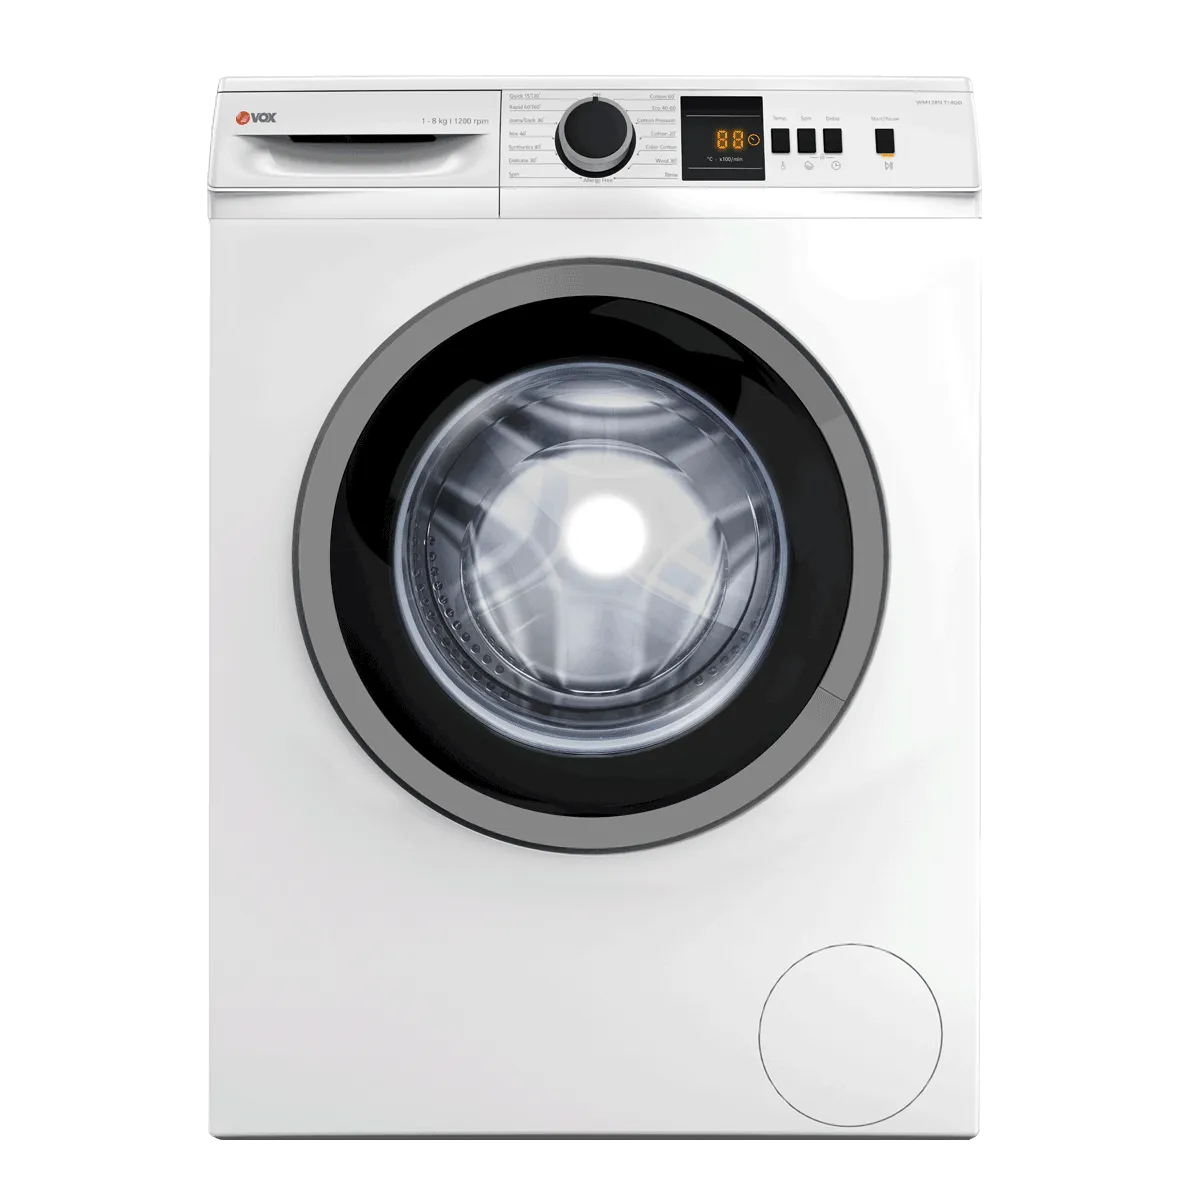 Washing machine WM1285-LT14QD 